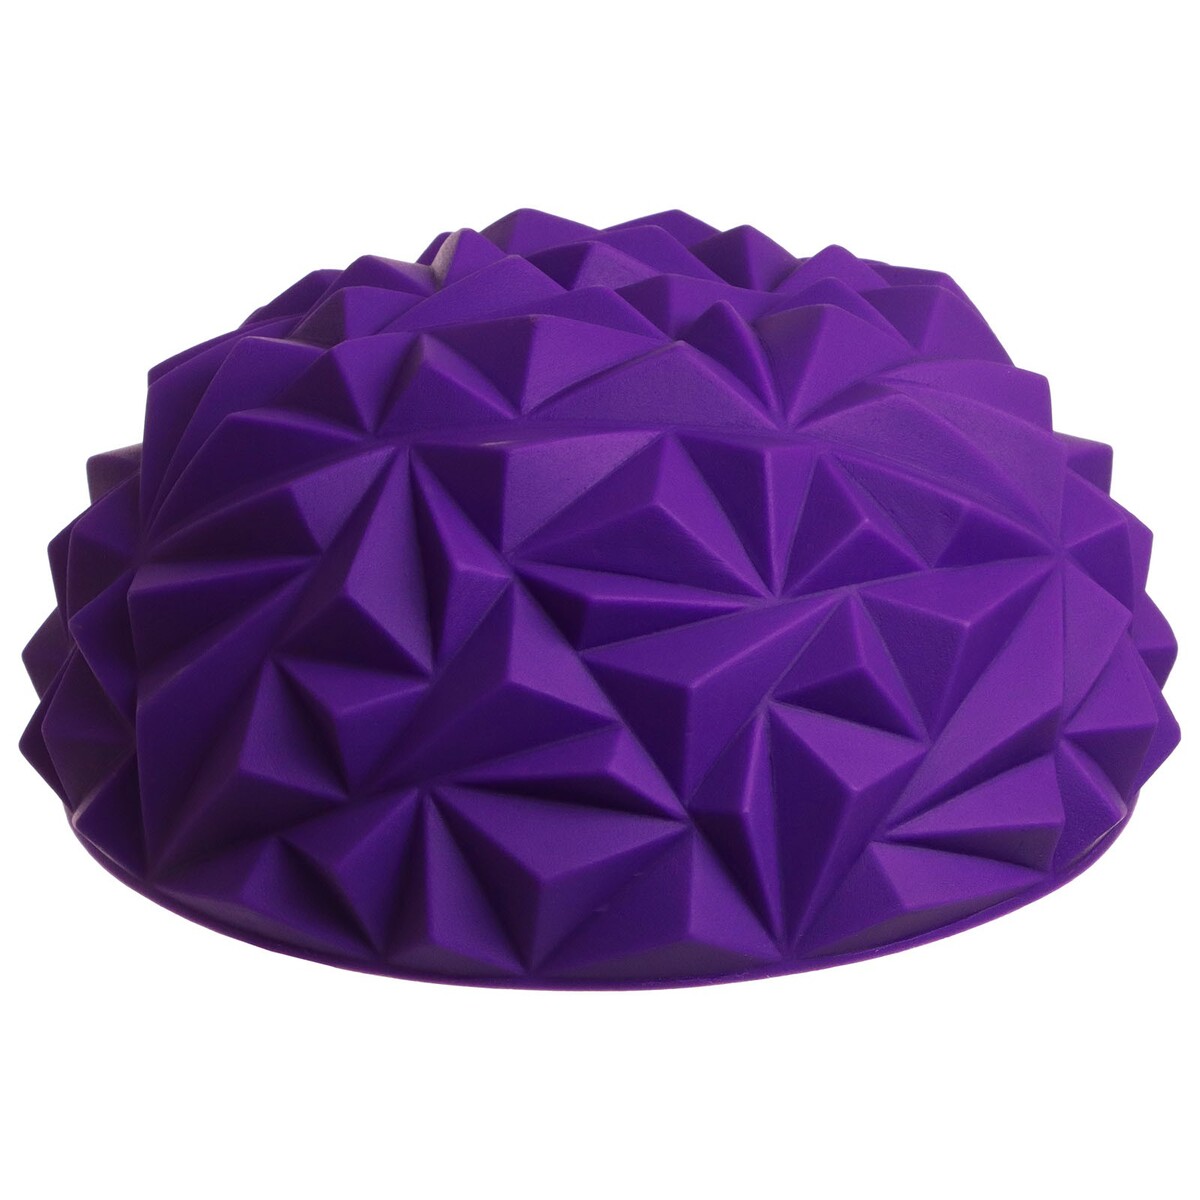 Полусфера массажная, 16х16х9 см, цвет фиолетовый полусфера массажная 16 х 16 х 9 см 250 г фиолетовый